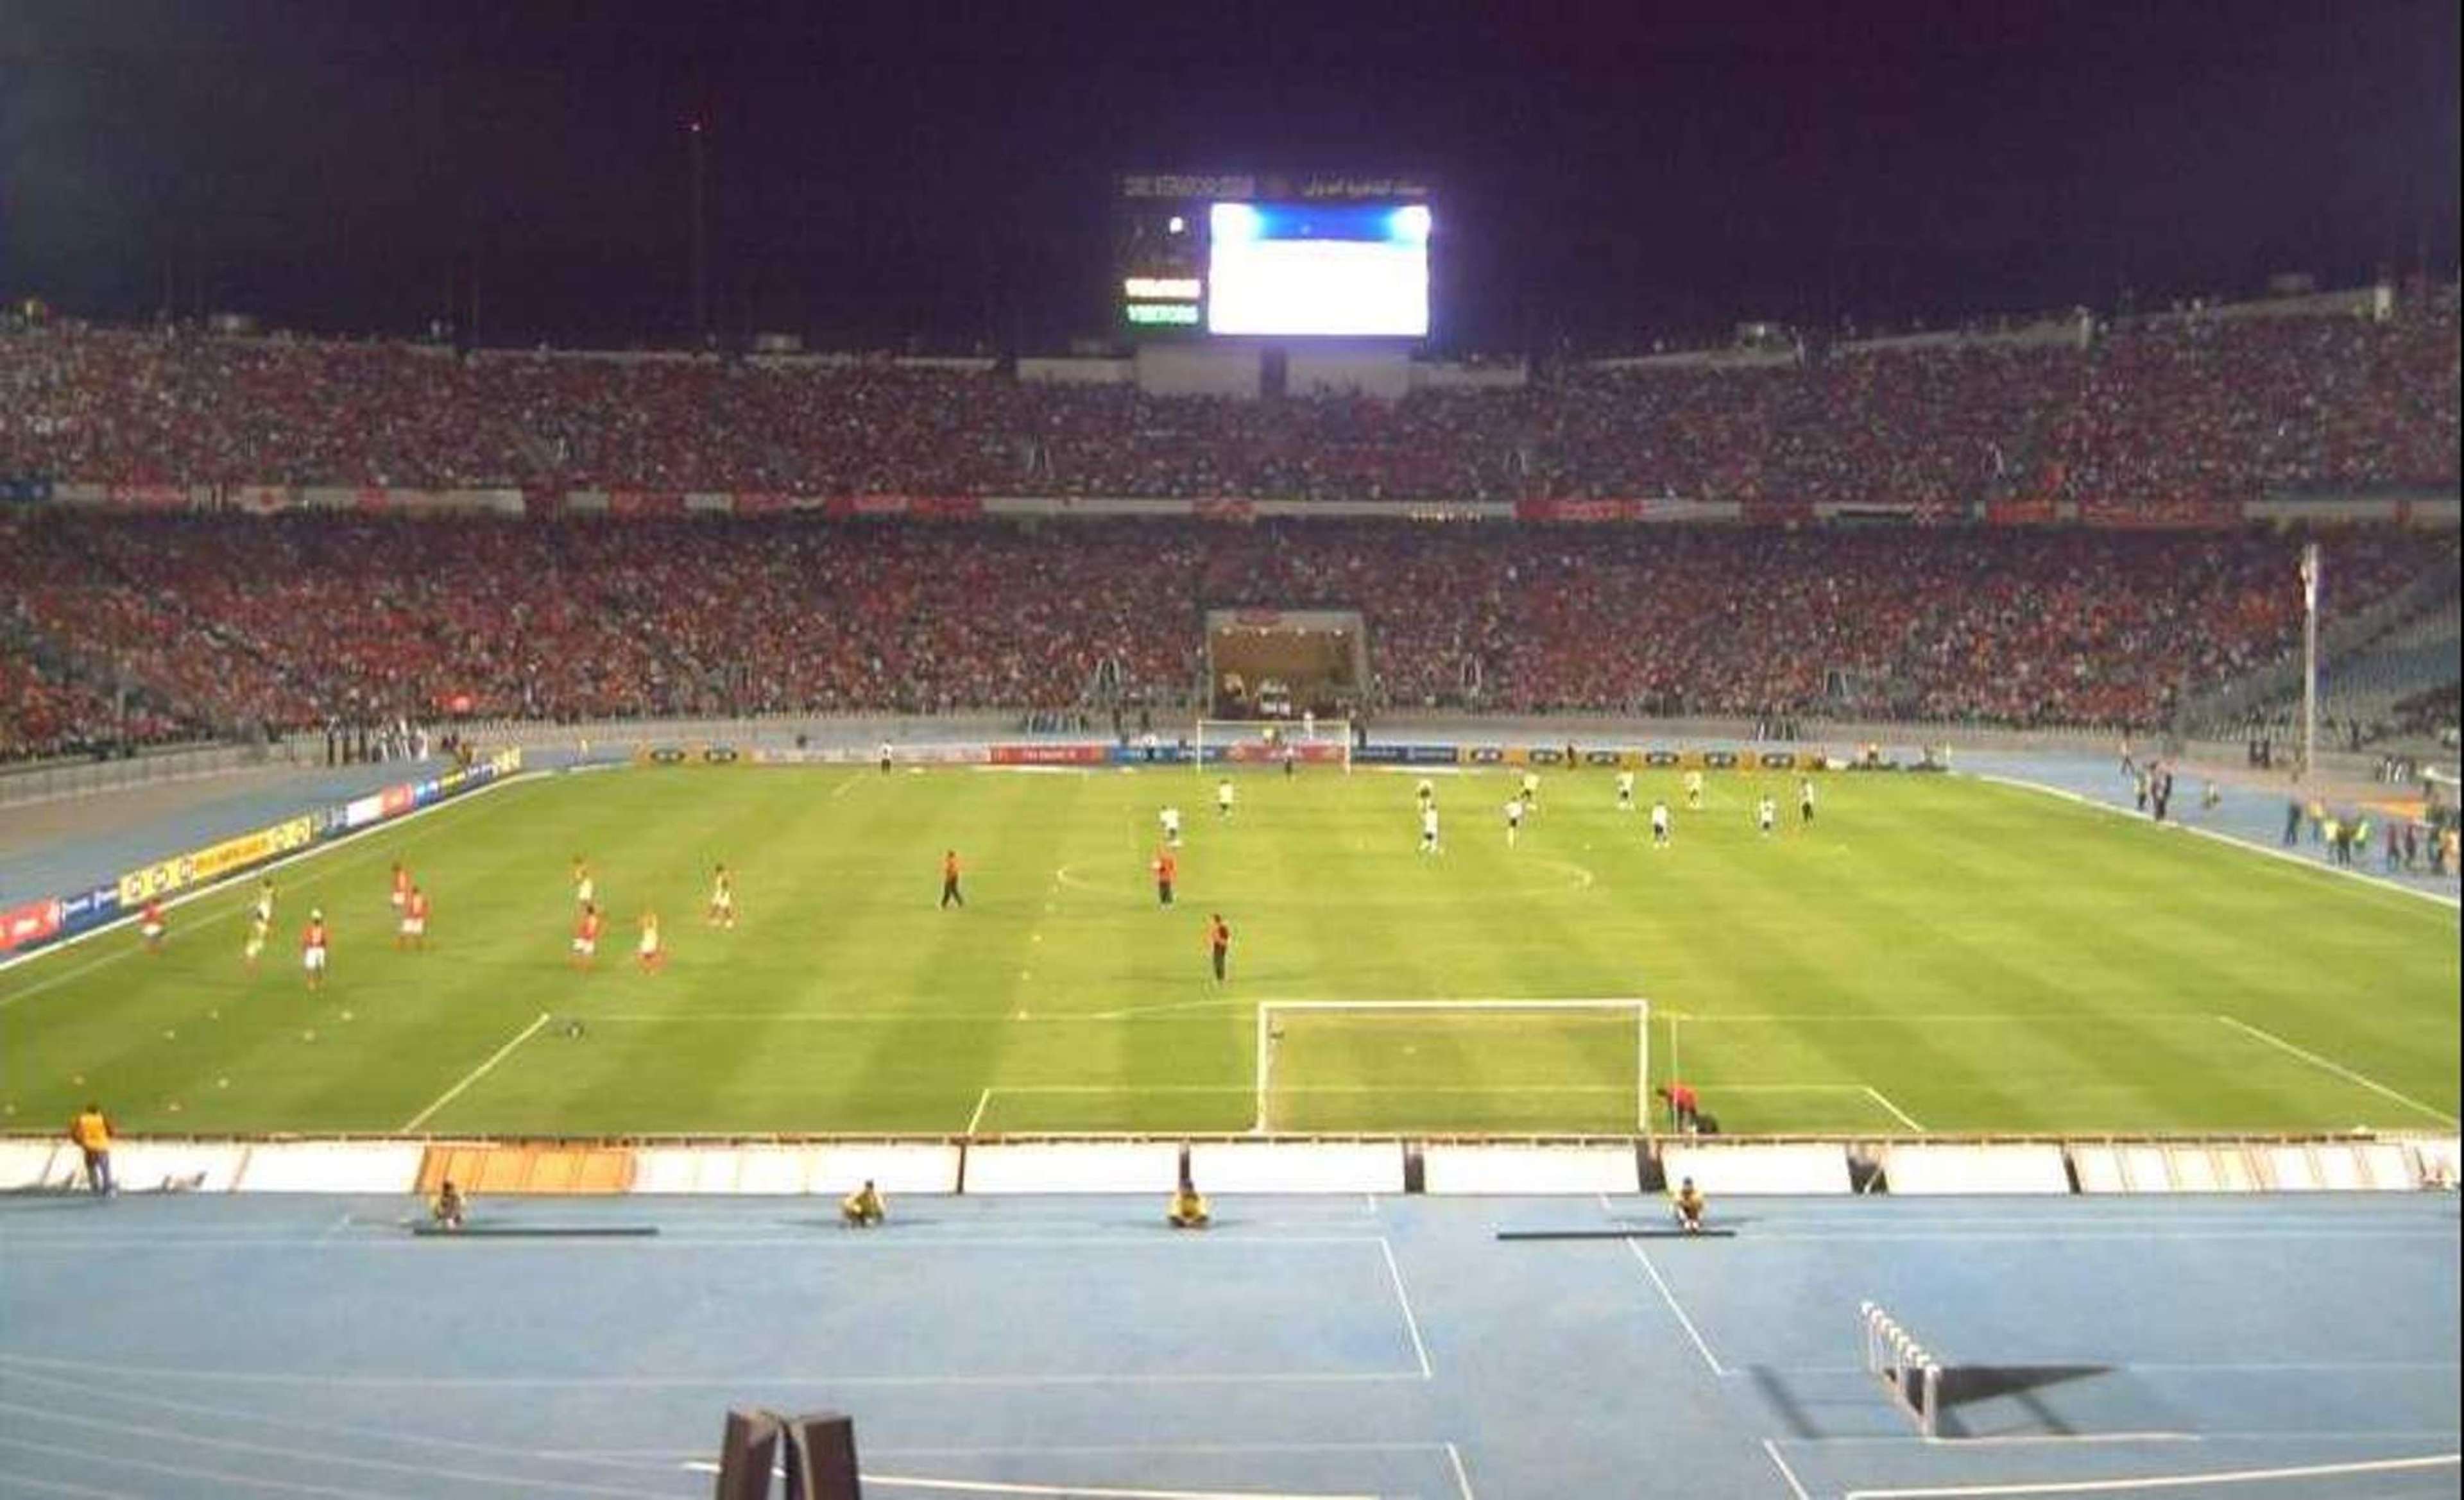 Cairo Stadium